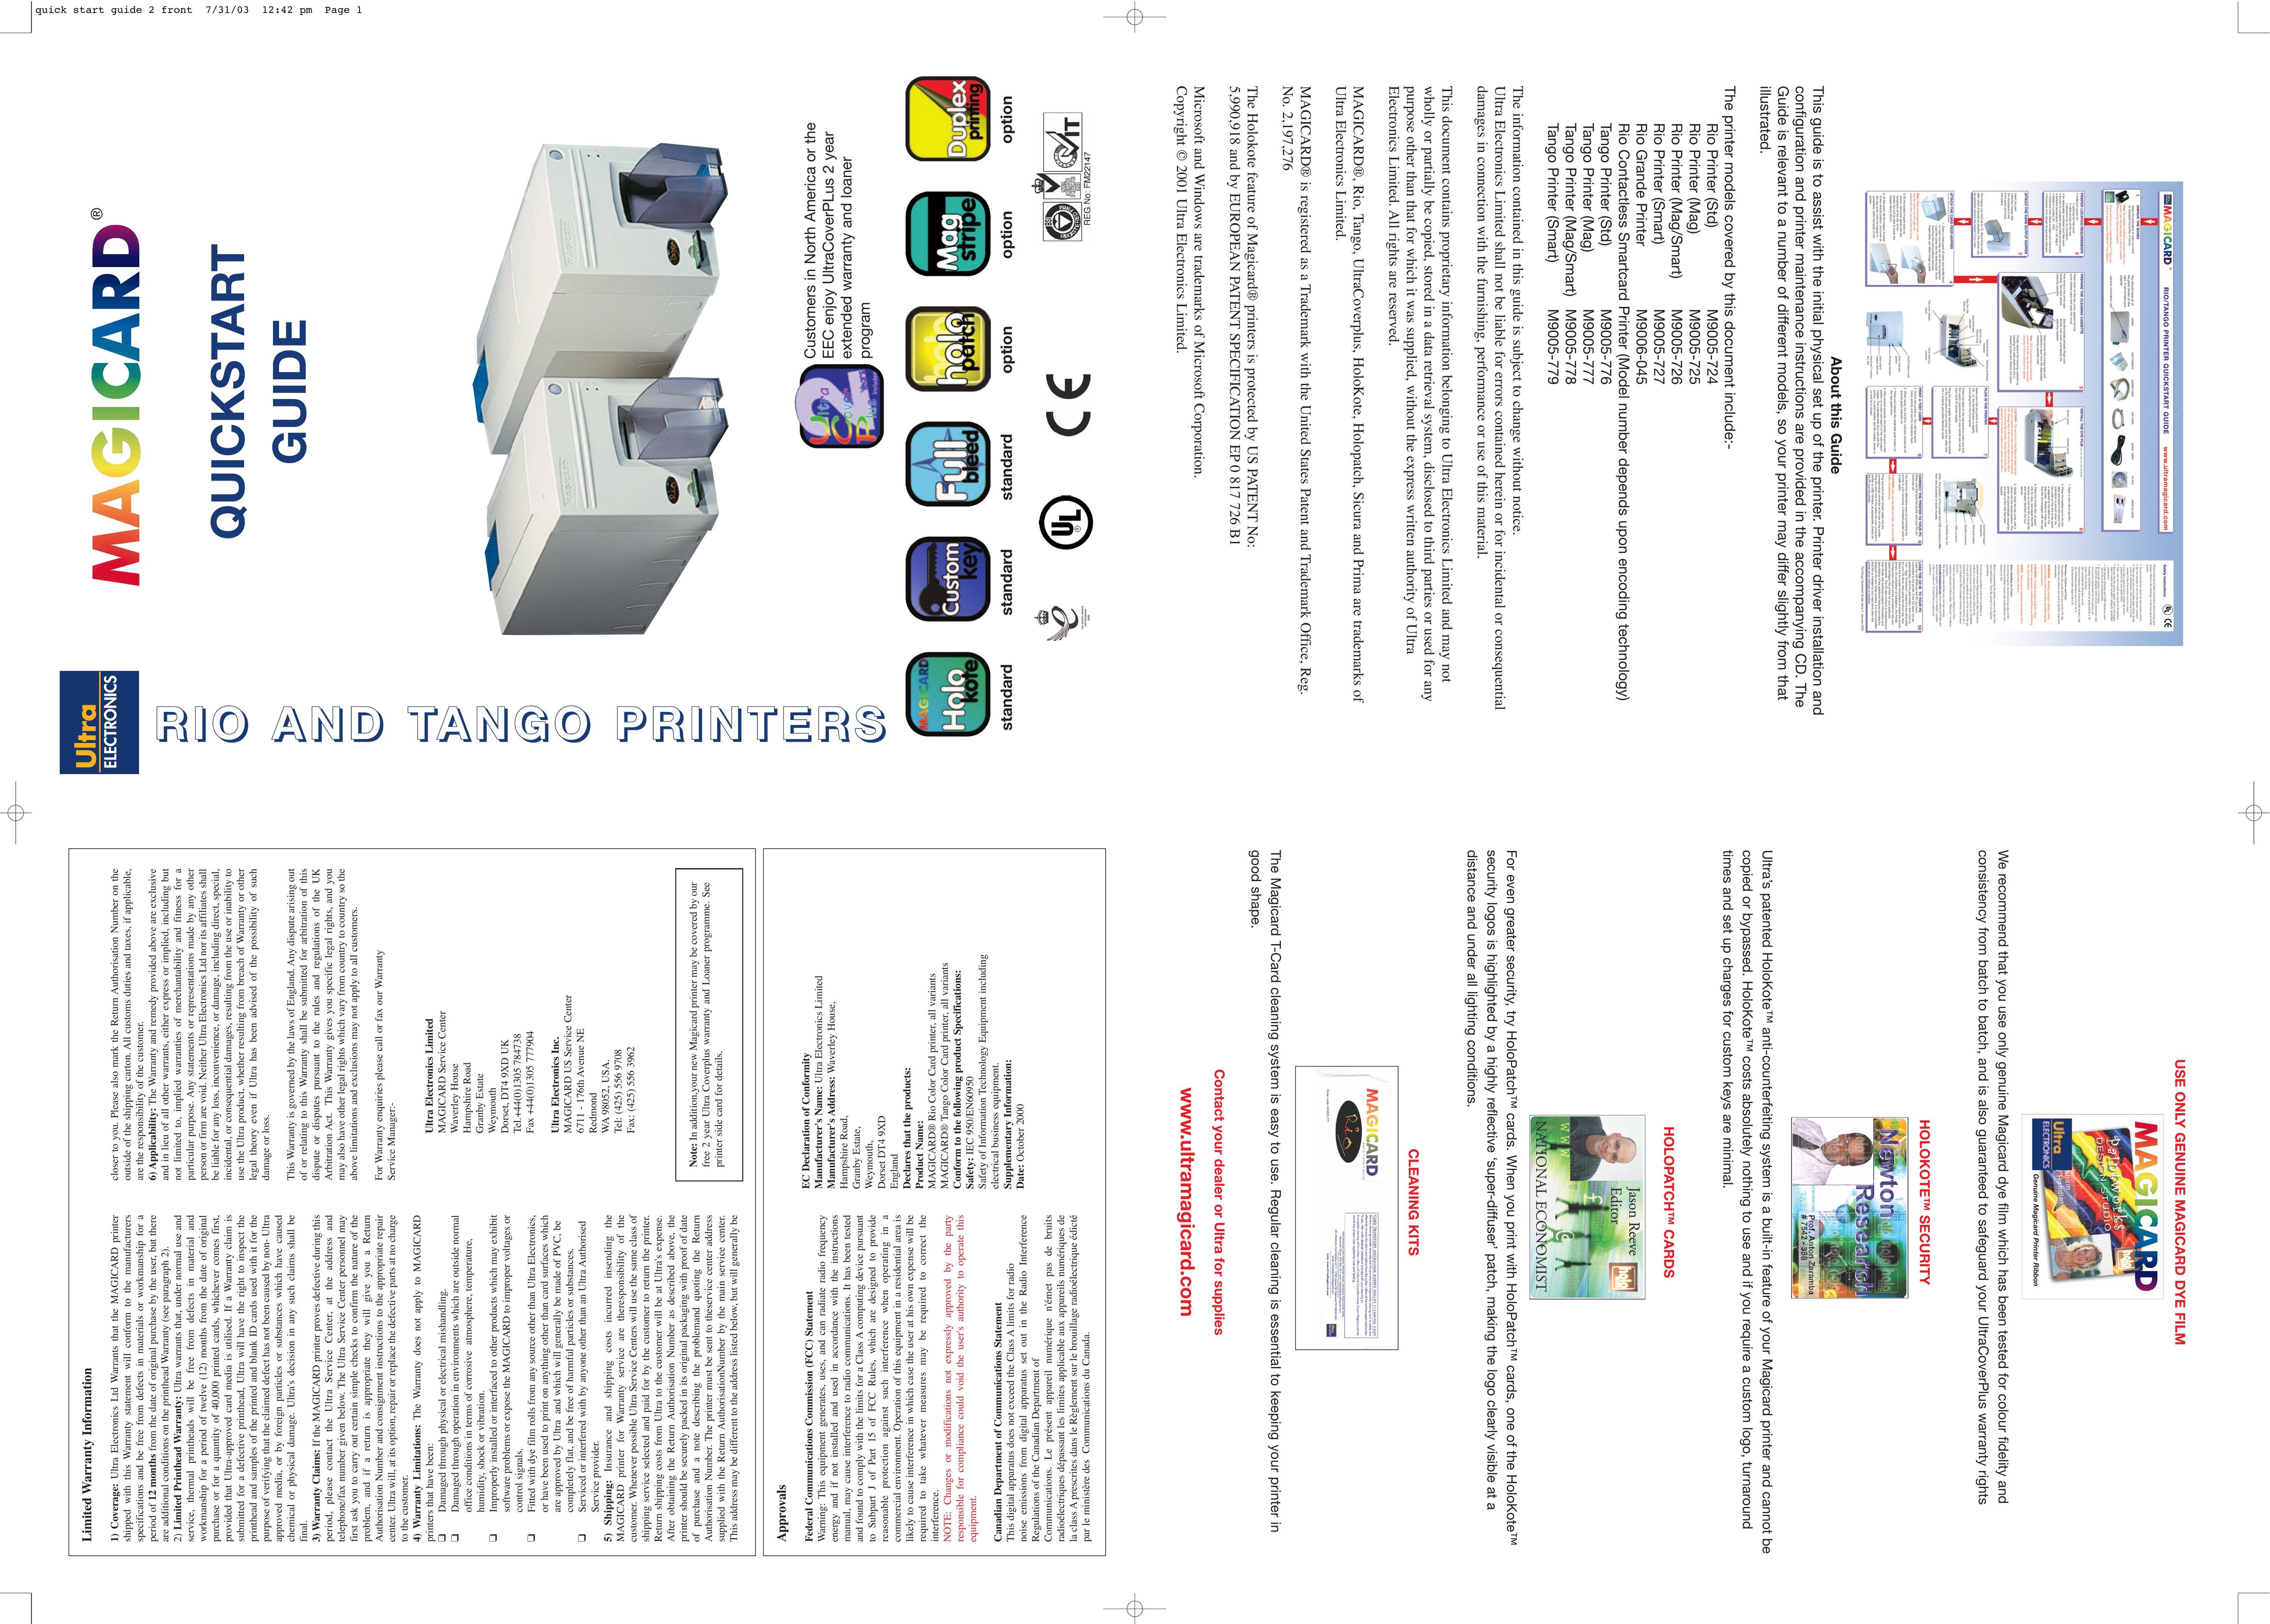 Ultra electronic M9005-777 Printer User Manual